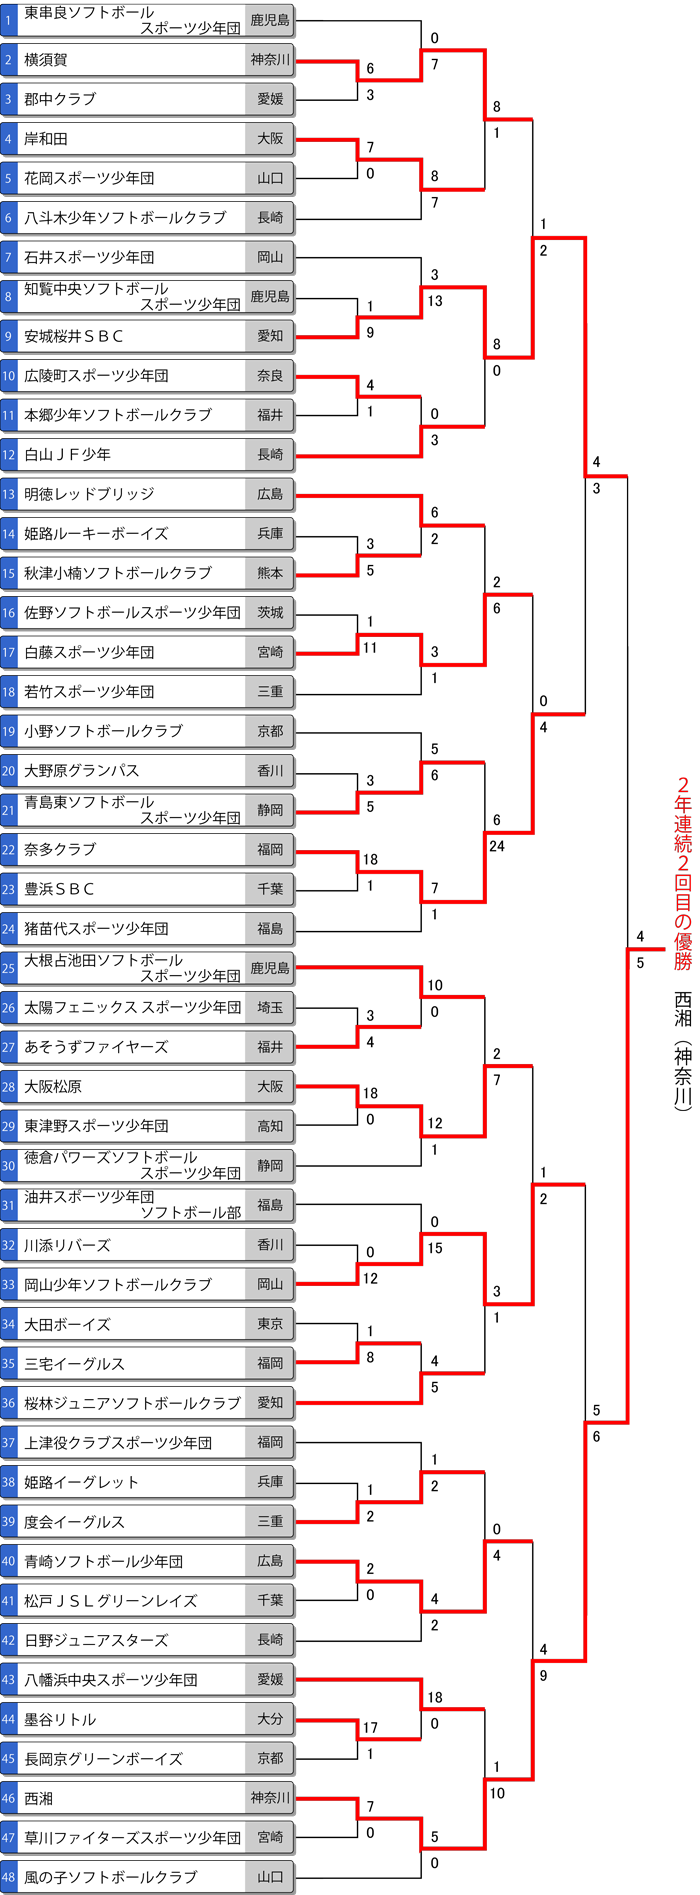 第15回春季全日本小学生男子大会トーナメント表